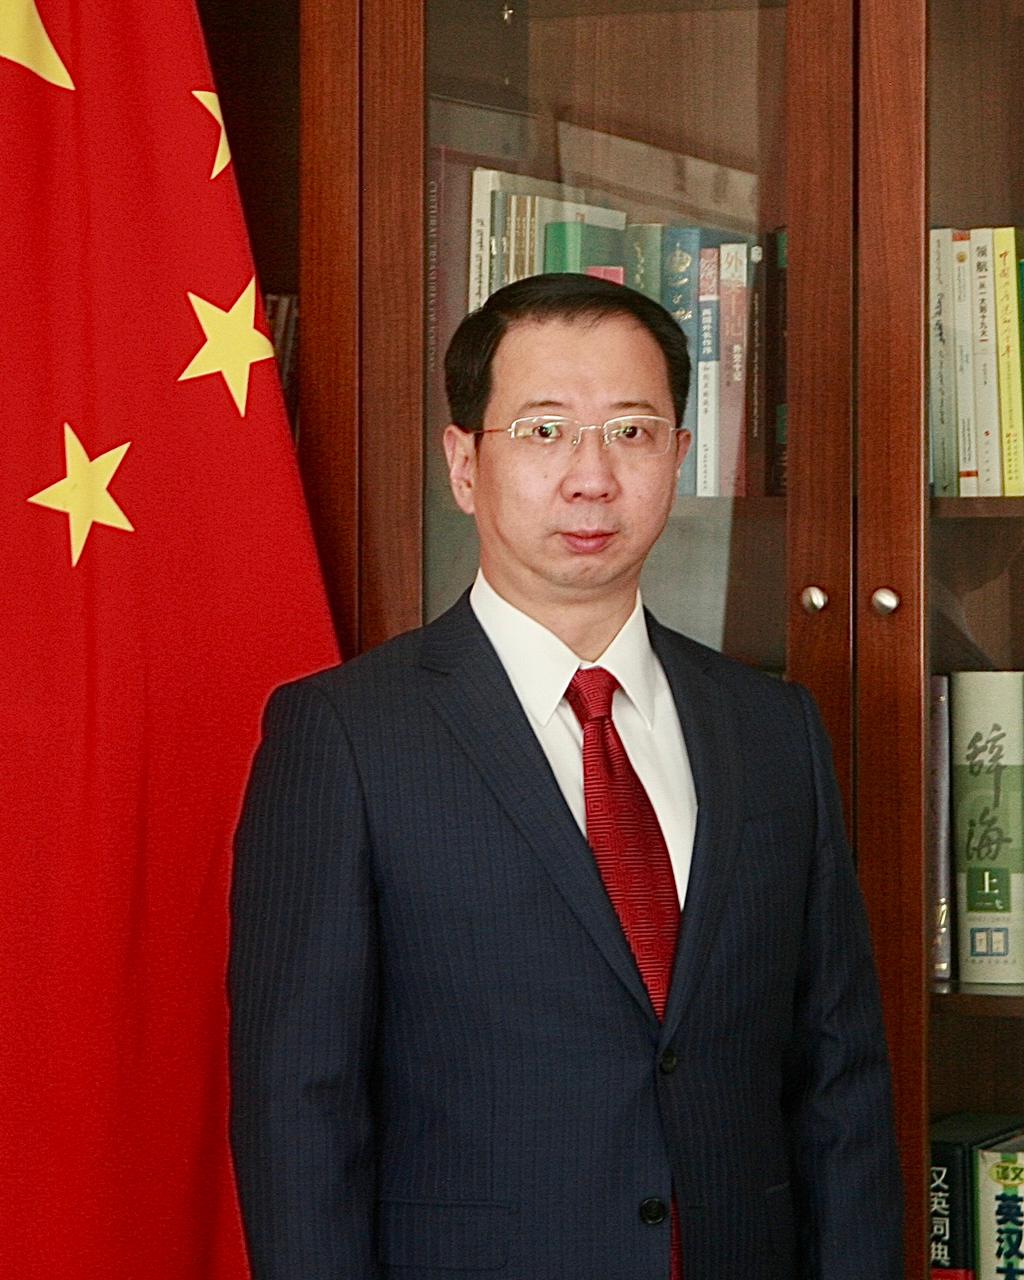 السفير الصيني تشن تشوان دونغ